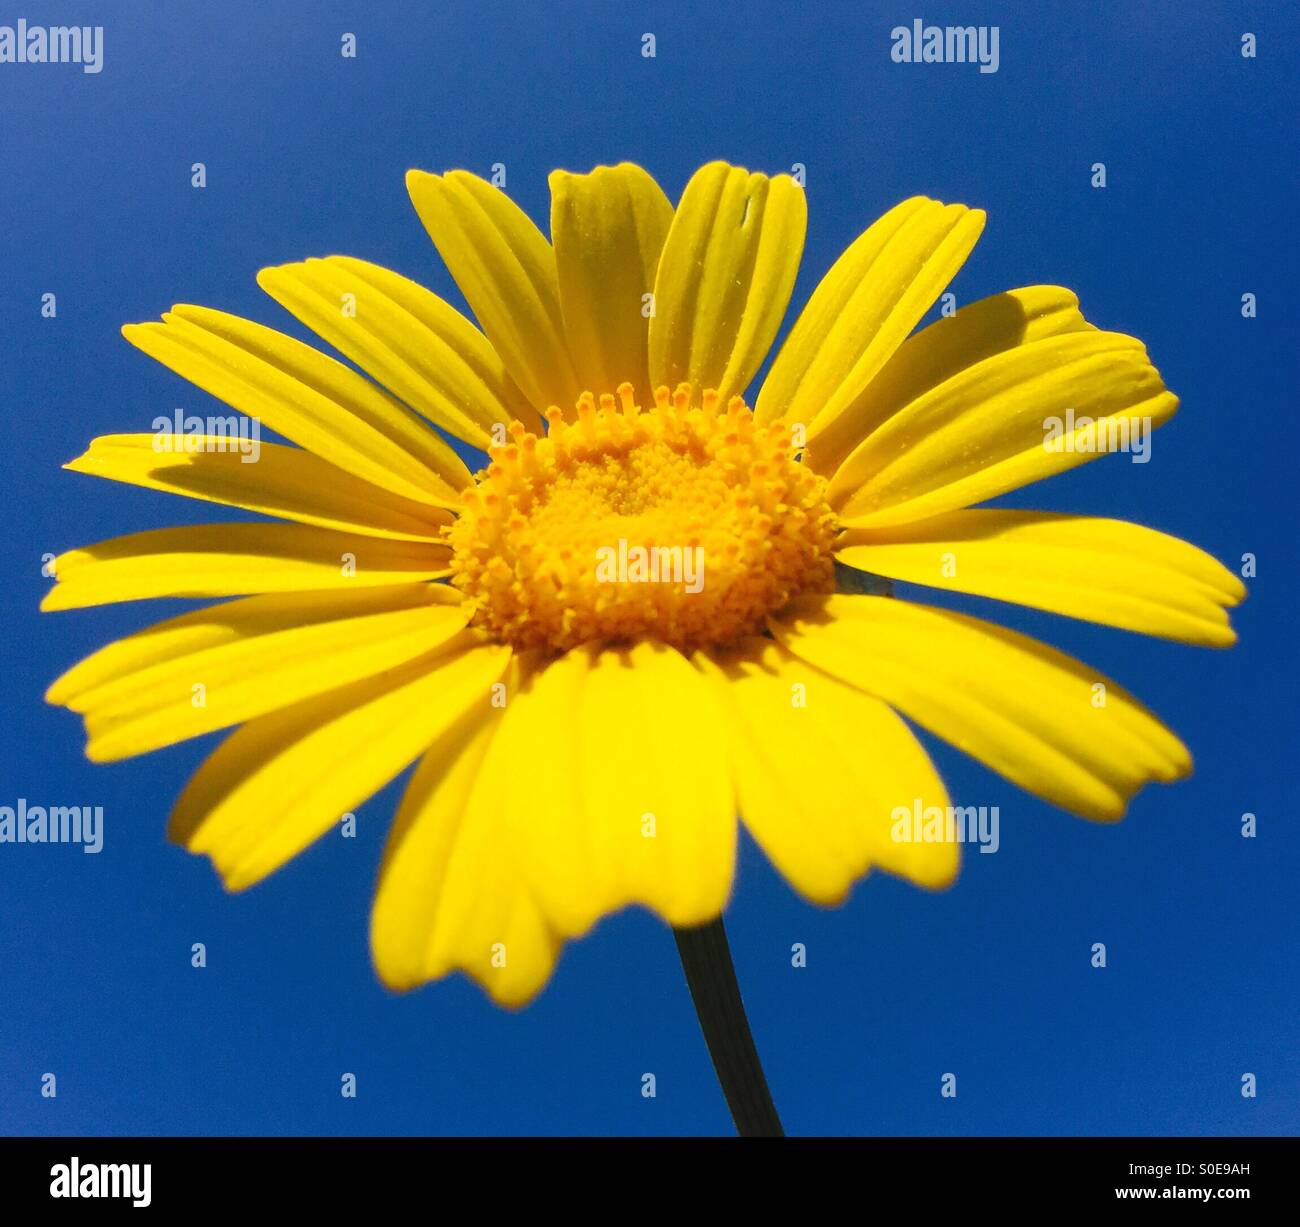 Lebendige Gelbes Gänseblümchen grüßt stolz die Sonne gegen einen azurblauen Himmel. Stockfoto